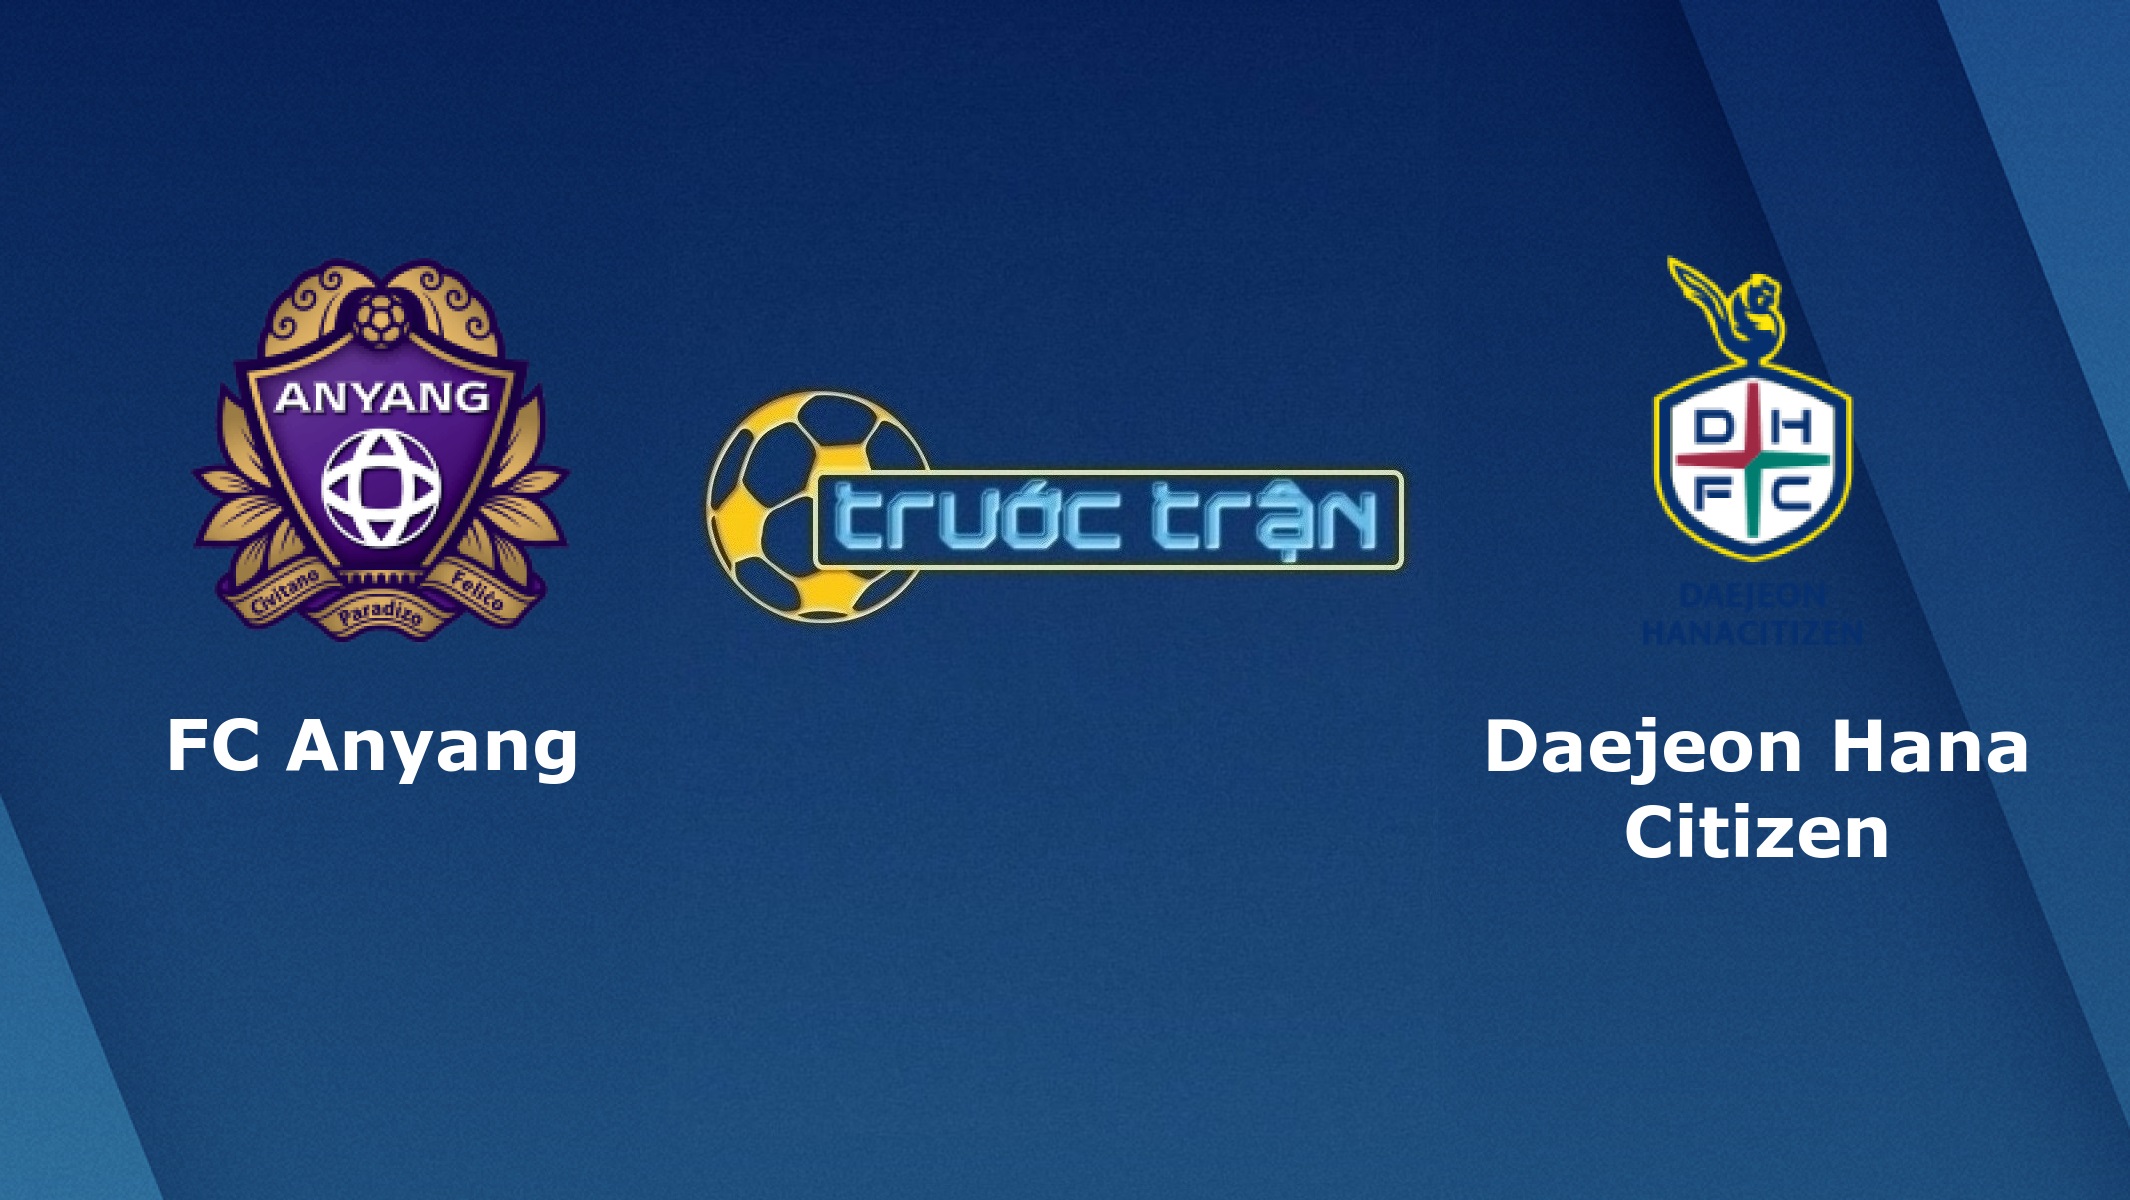 FC Anyang vs Daejeon Hana Citizen – Tip kèo bóng đá hôm nay – 24/08